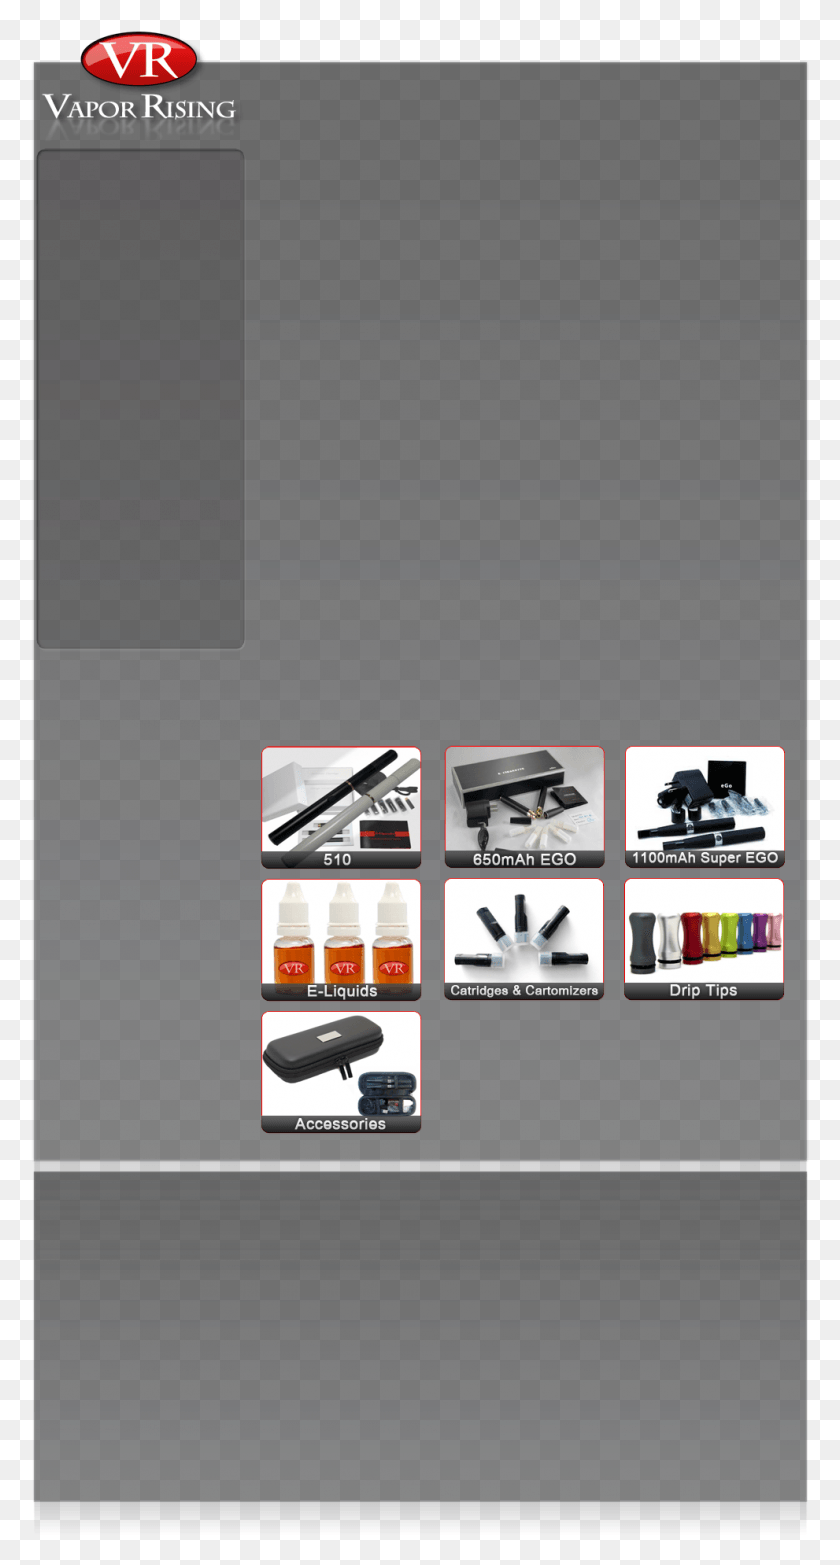 991x1913 Электронные Сигареты Vapor Rising Графический Дизайн, Плакат, Реклама, Флаер Png Скачать